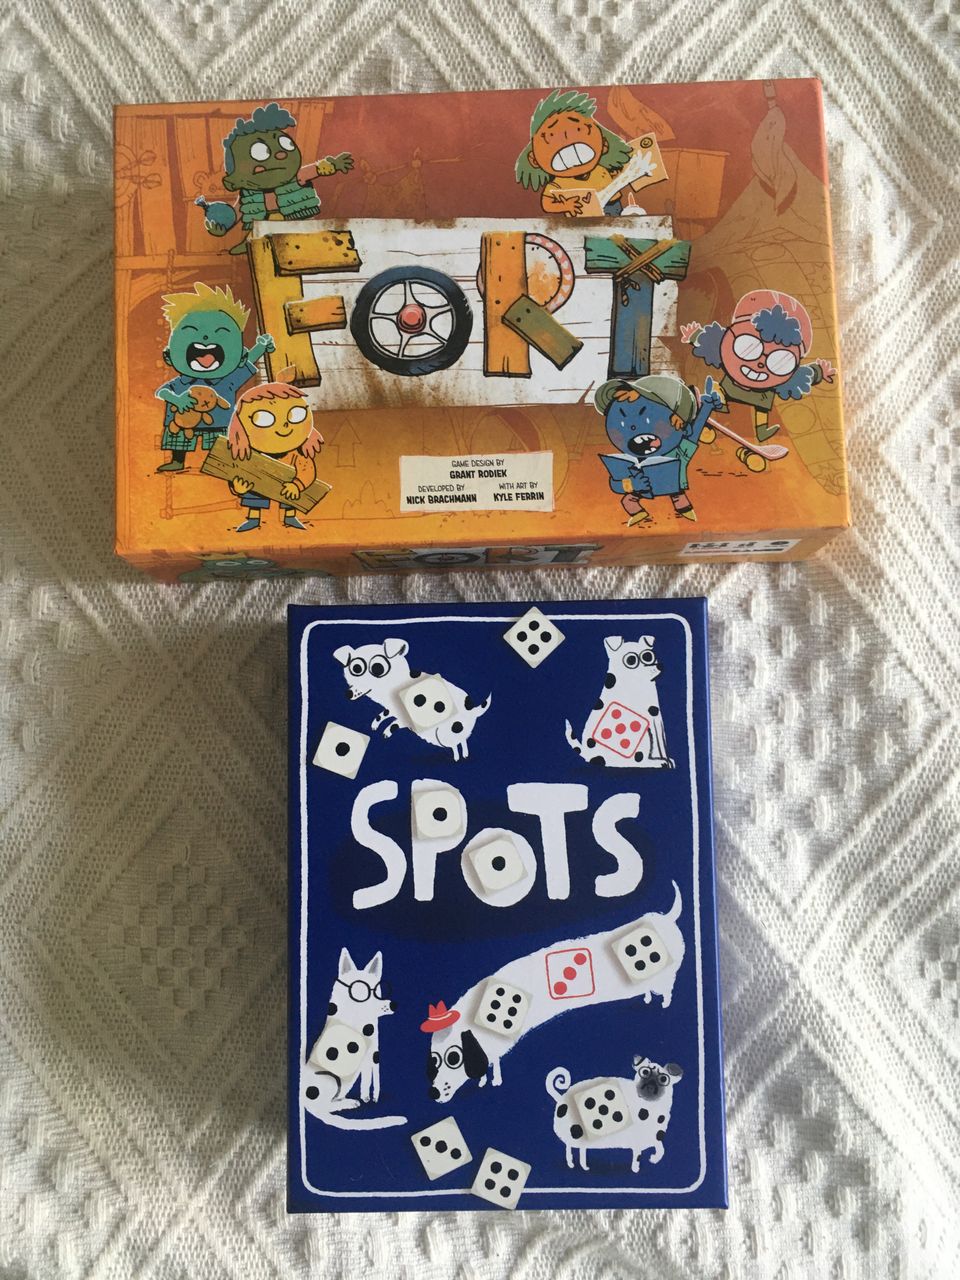 Lautapelit/board games Fort + Spots